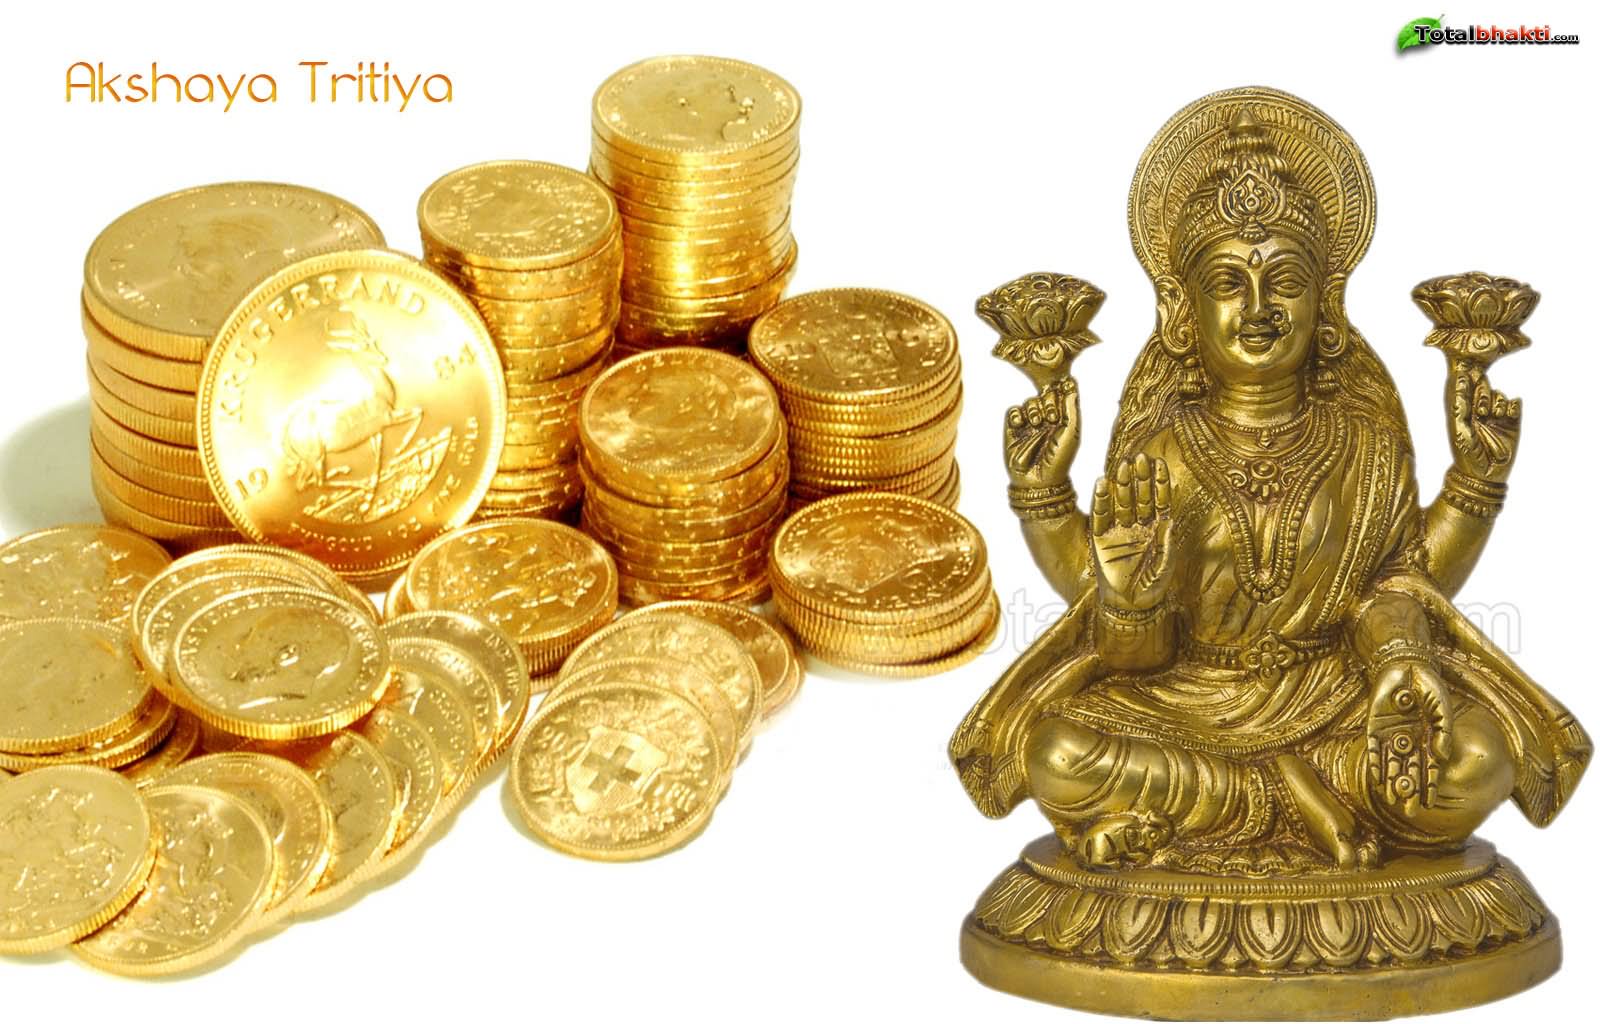 Akshaya Tritiya Goddess Lakshmi Picture